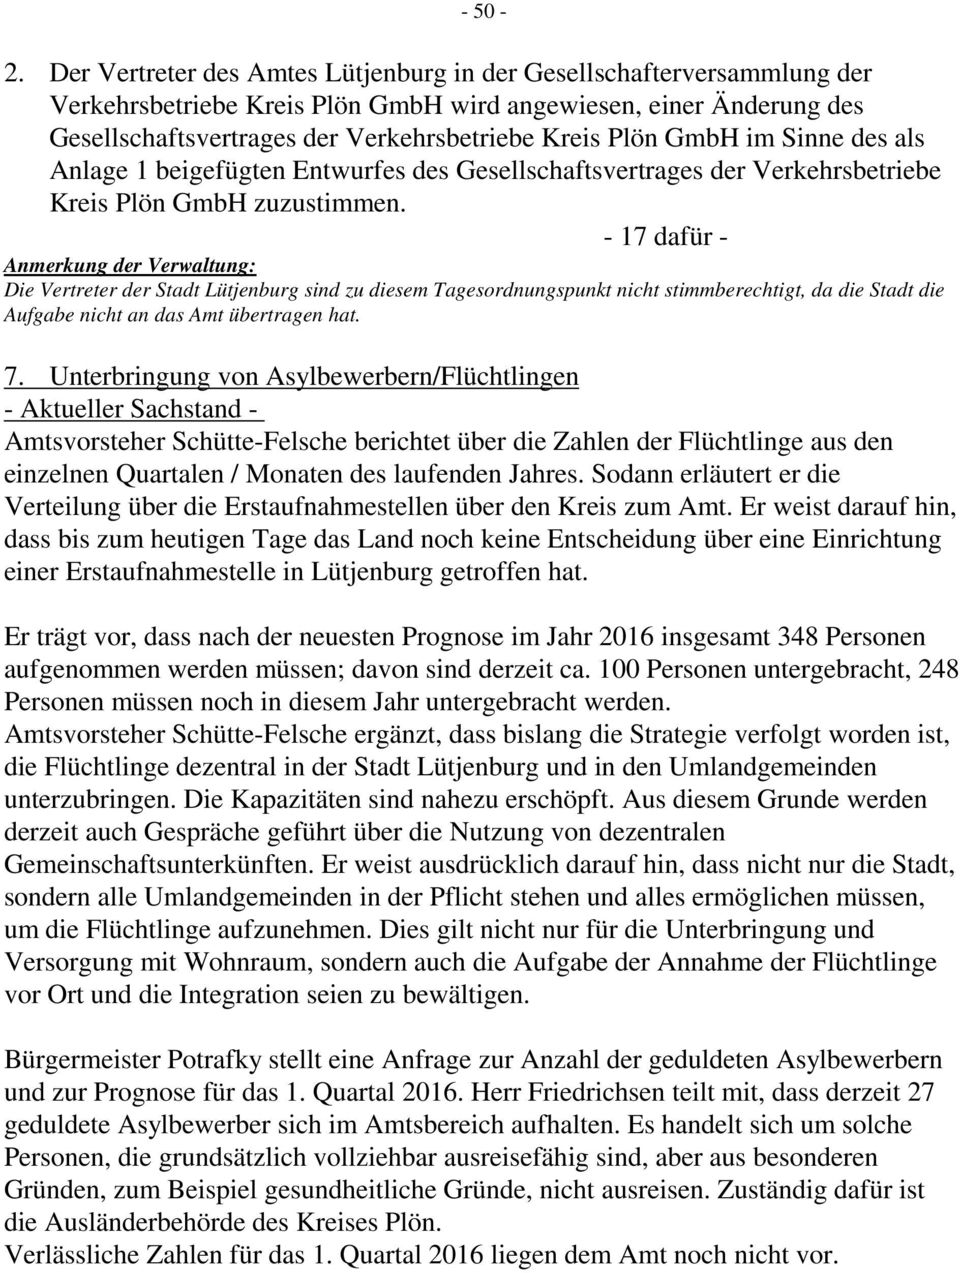 GmbH im Sinne des als Anlage 1 beigefügten Entwurfes des Gesellschaftsvertrages der Verkehrsbetriebe Kreis Plön GmbH zuzustimmen.